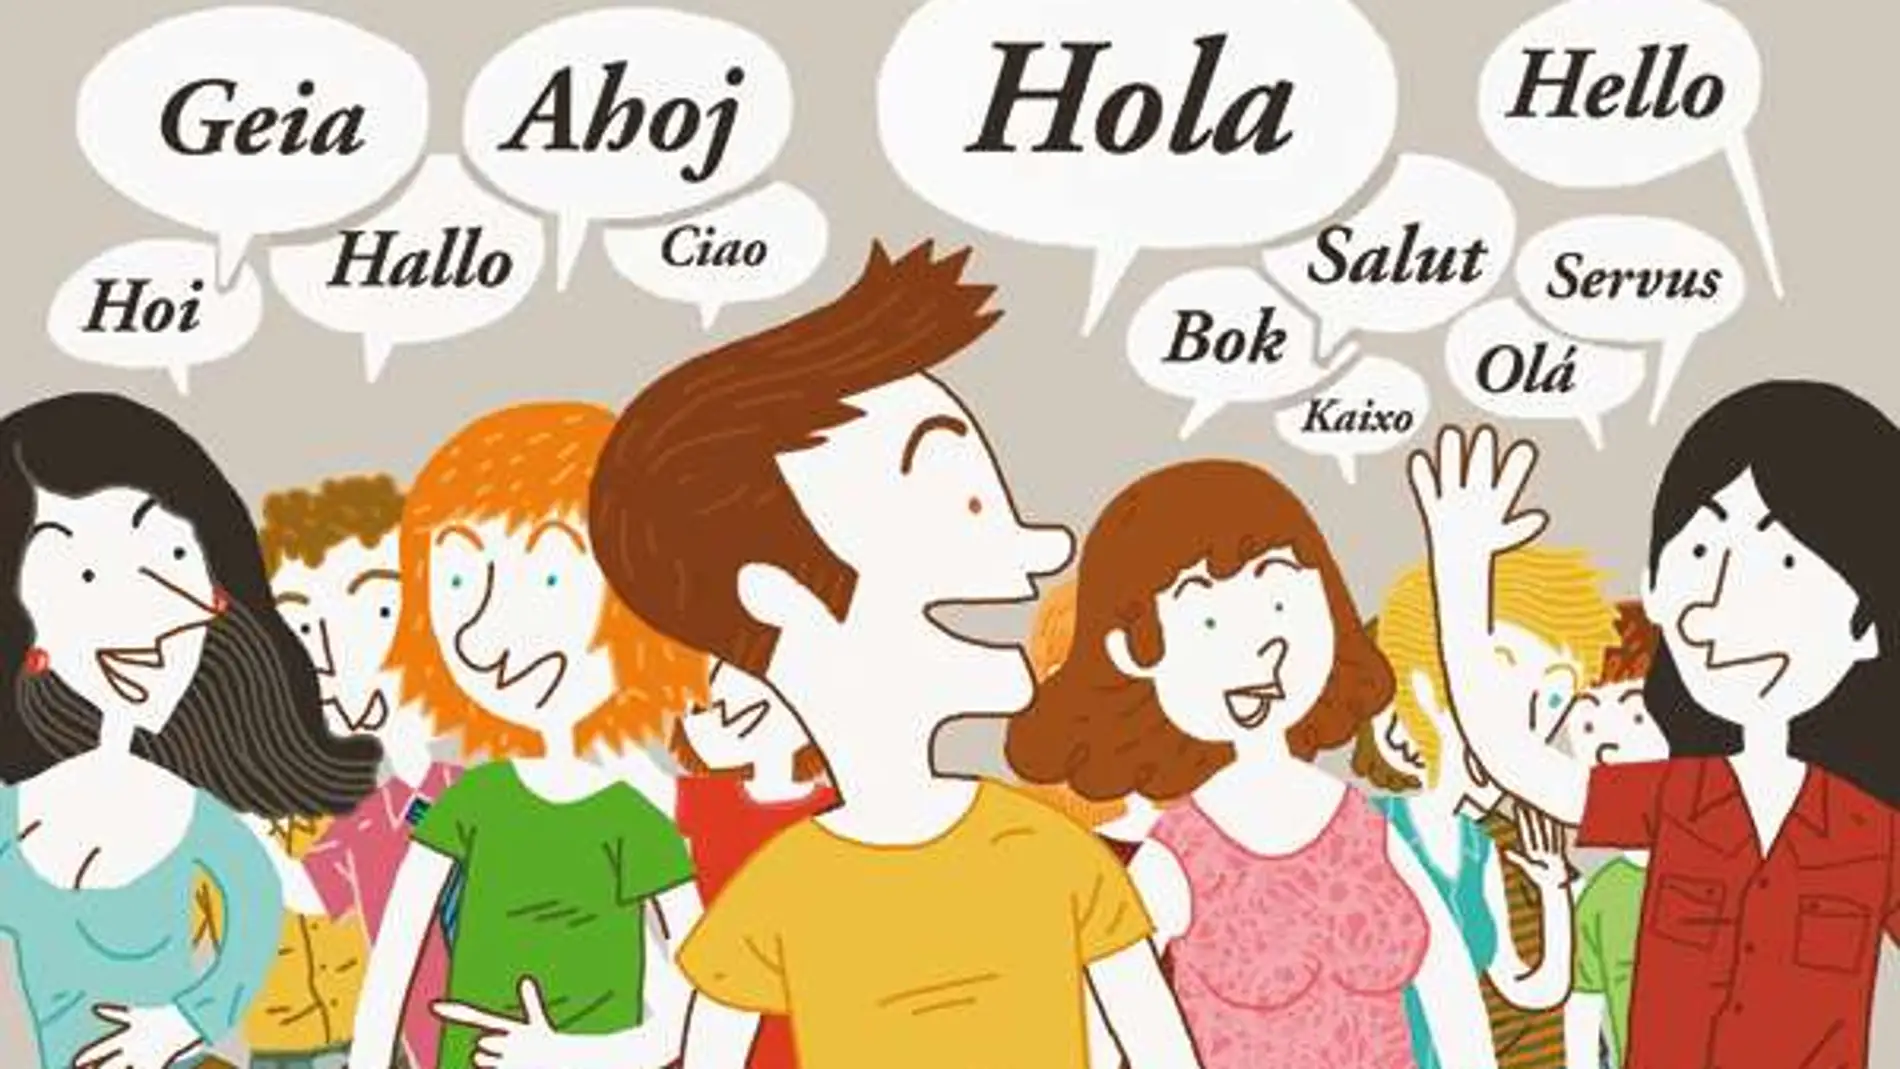 El idioma que más se estudia en España es el inglés y el segundo es el francés.